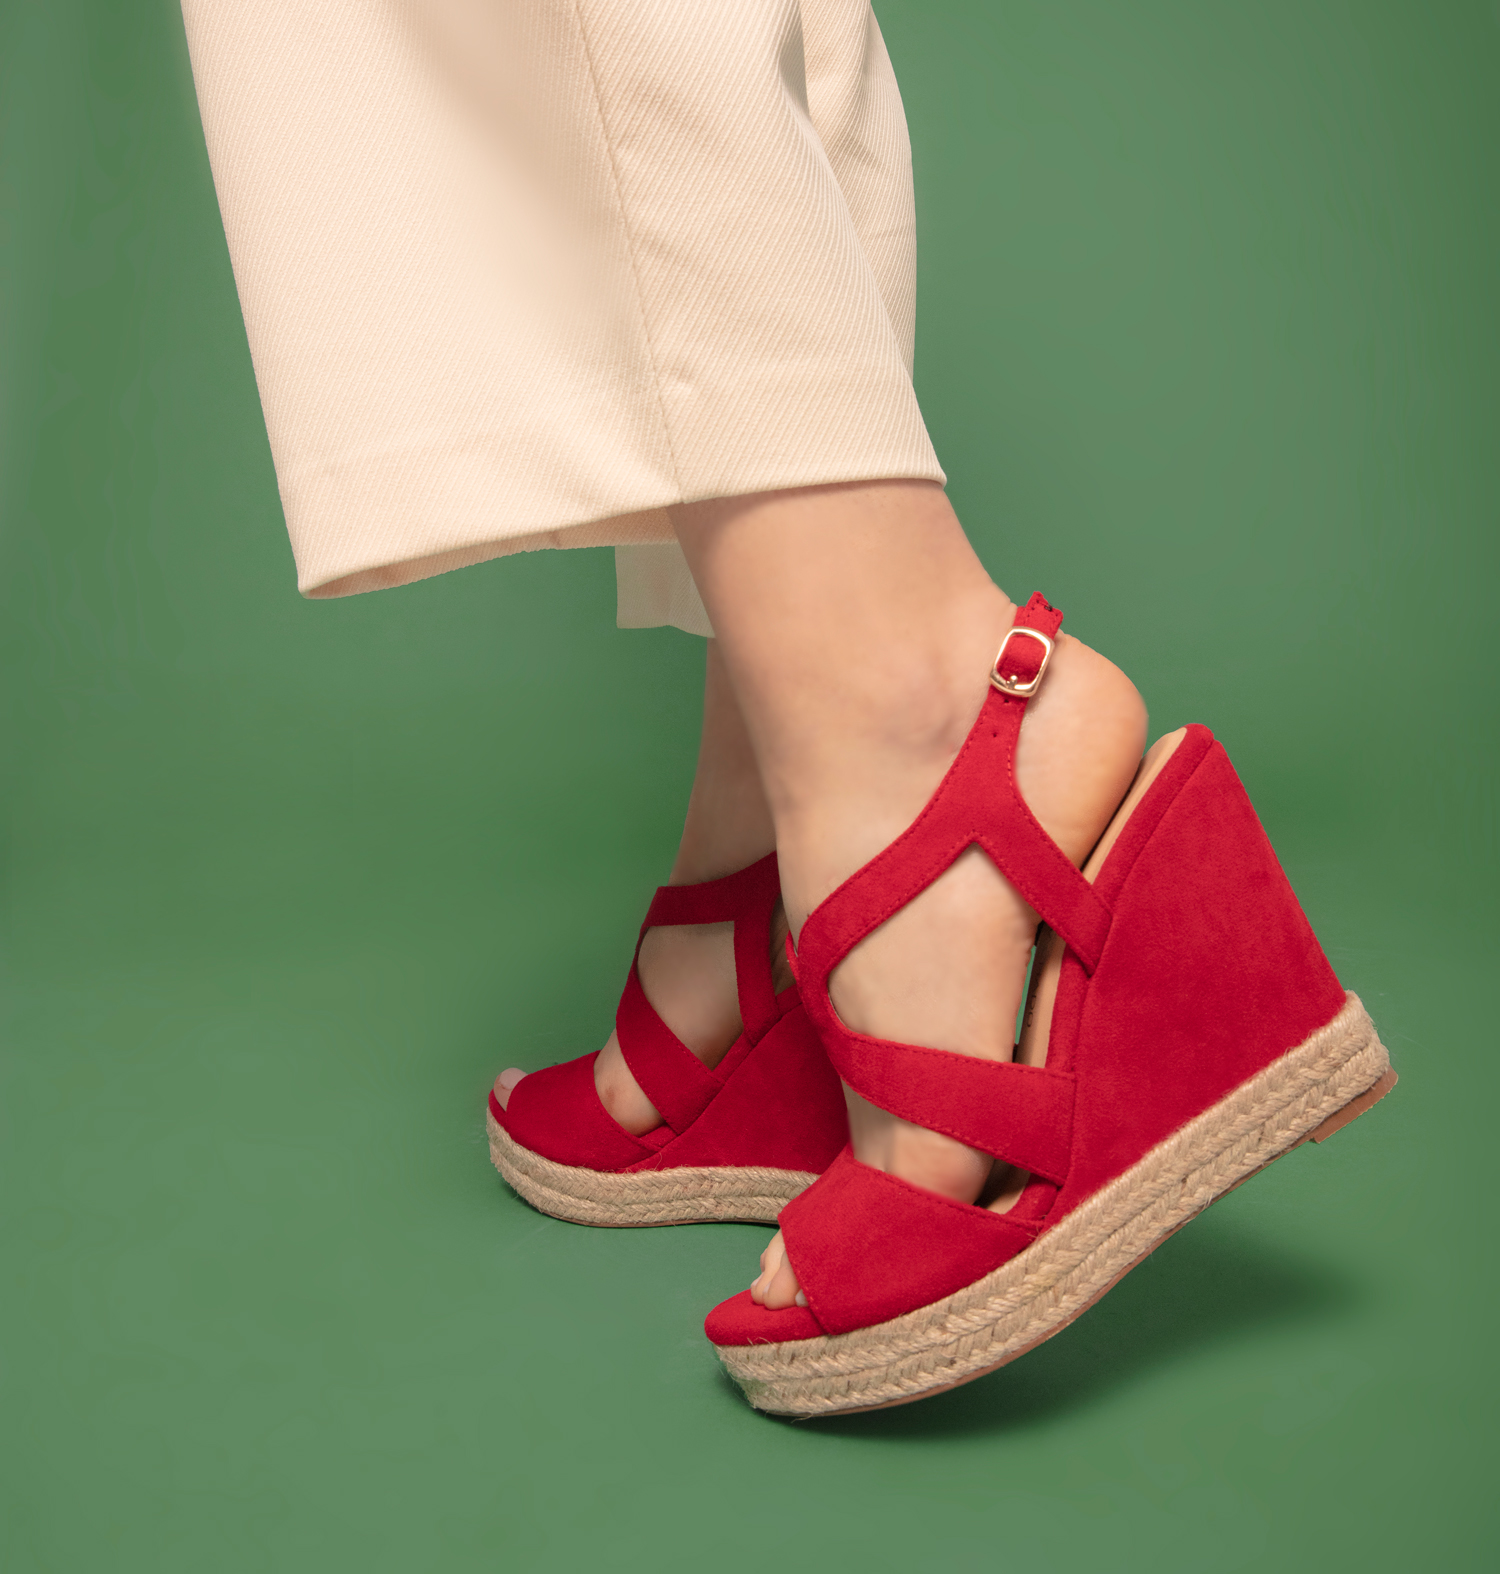 Sandales en suédine rouge compensées. 